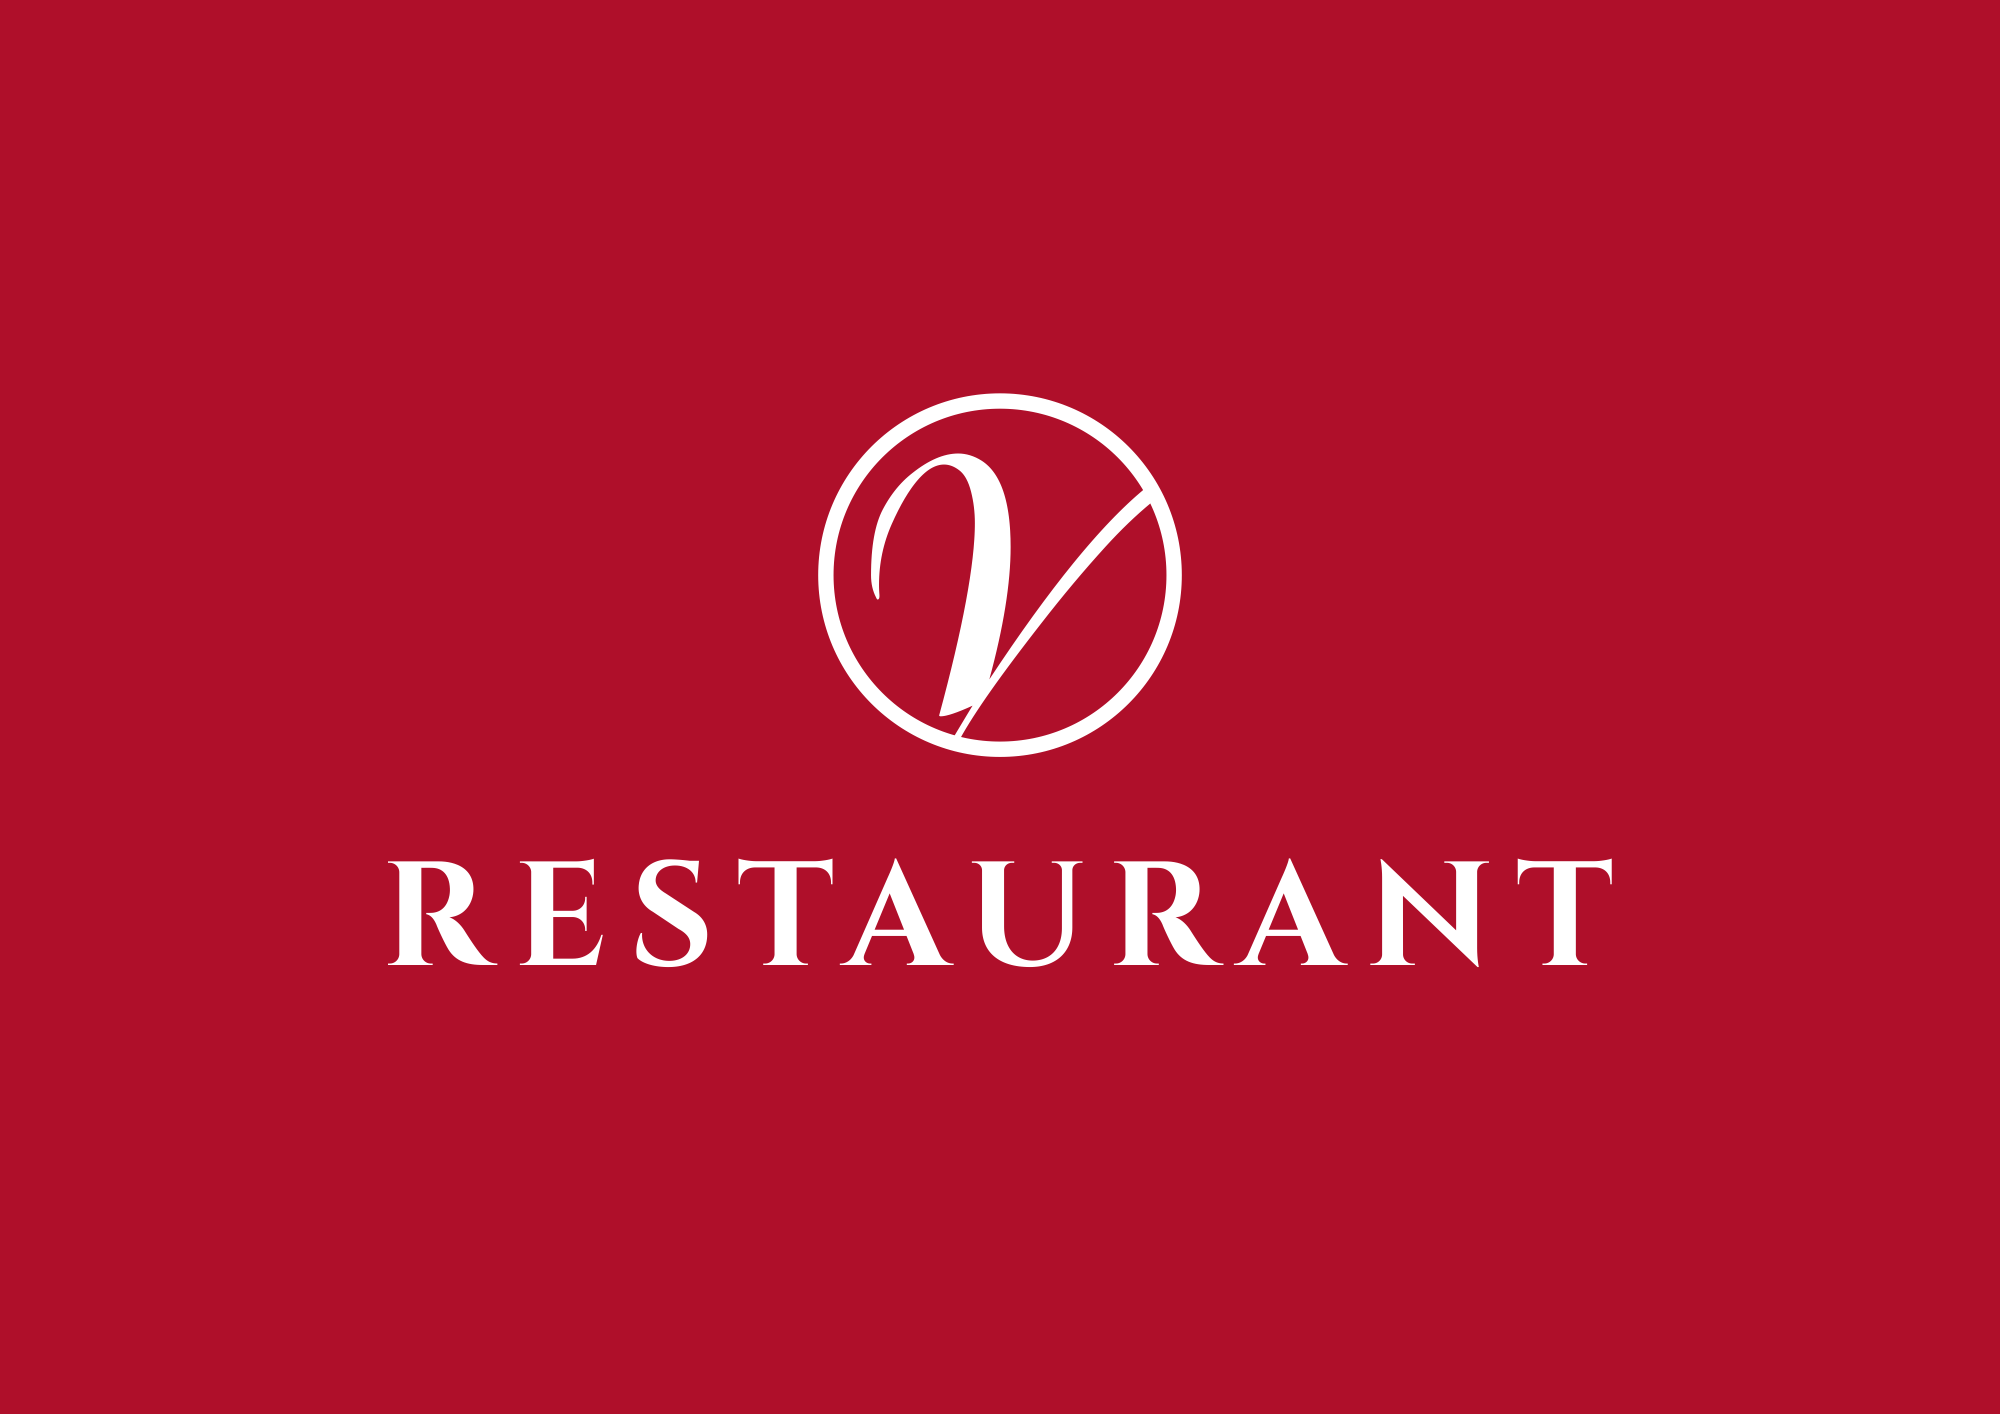 Restaurant Logo auf rotem Hintergrund. Elegantes, modernes Design mit hohem Wiedererkennungswert.